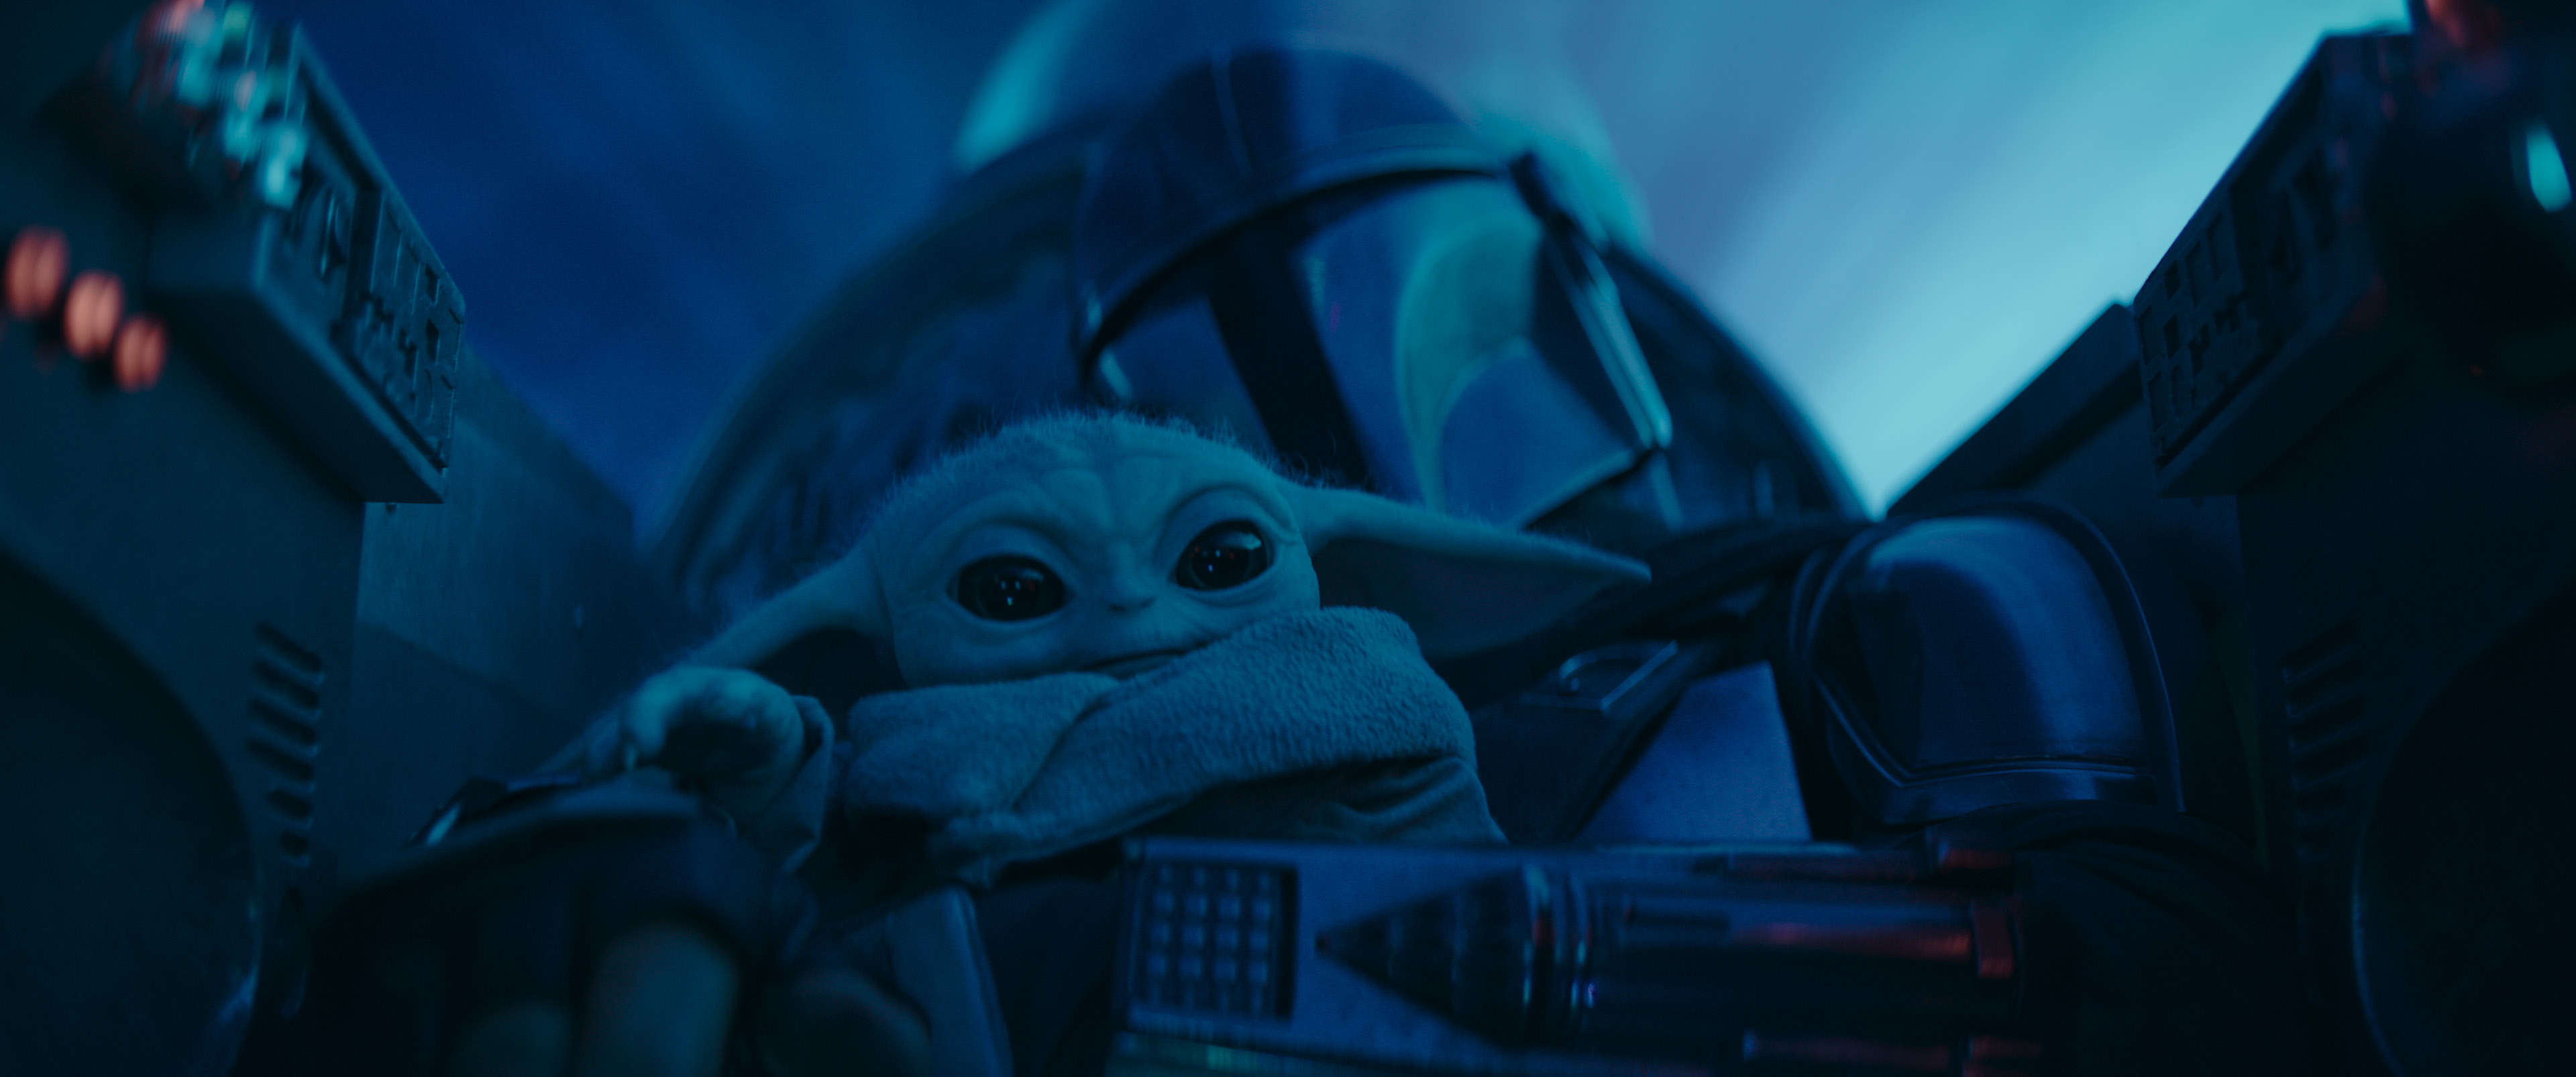 Mando, lydimas "kūdikio Yodos", savo laive. Vaizdas iš serijos "Mandalorianas", rodomos "Disney+".